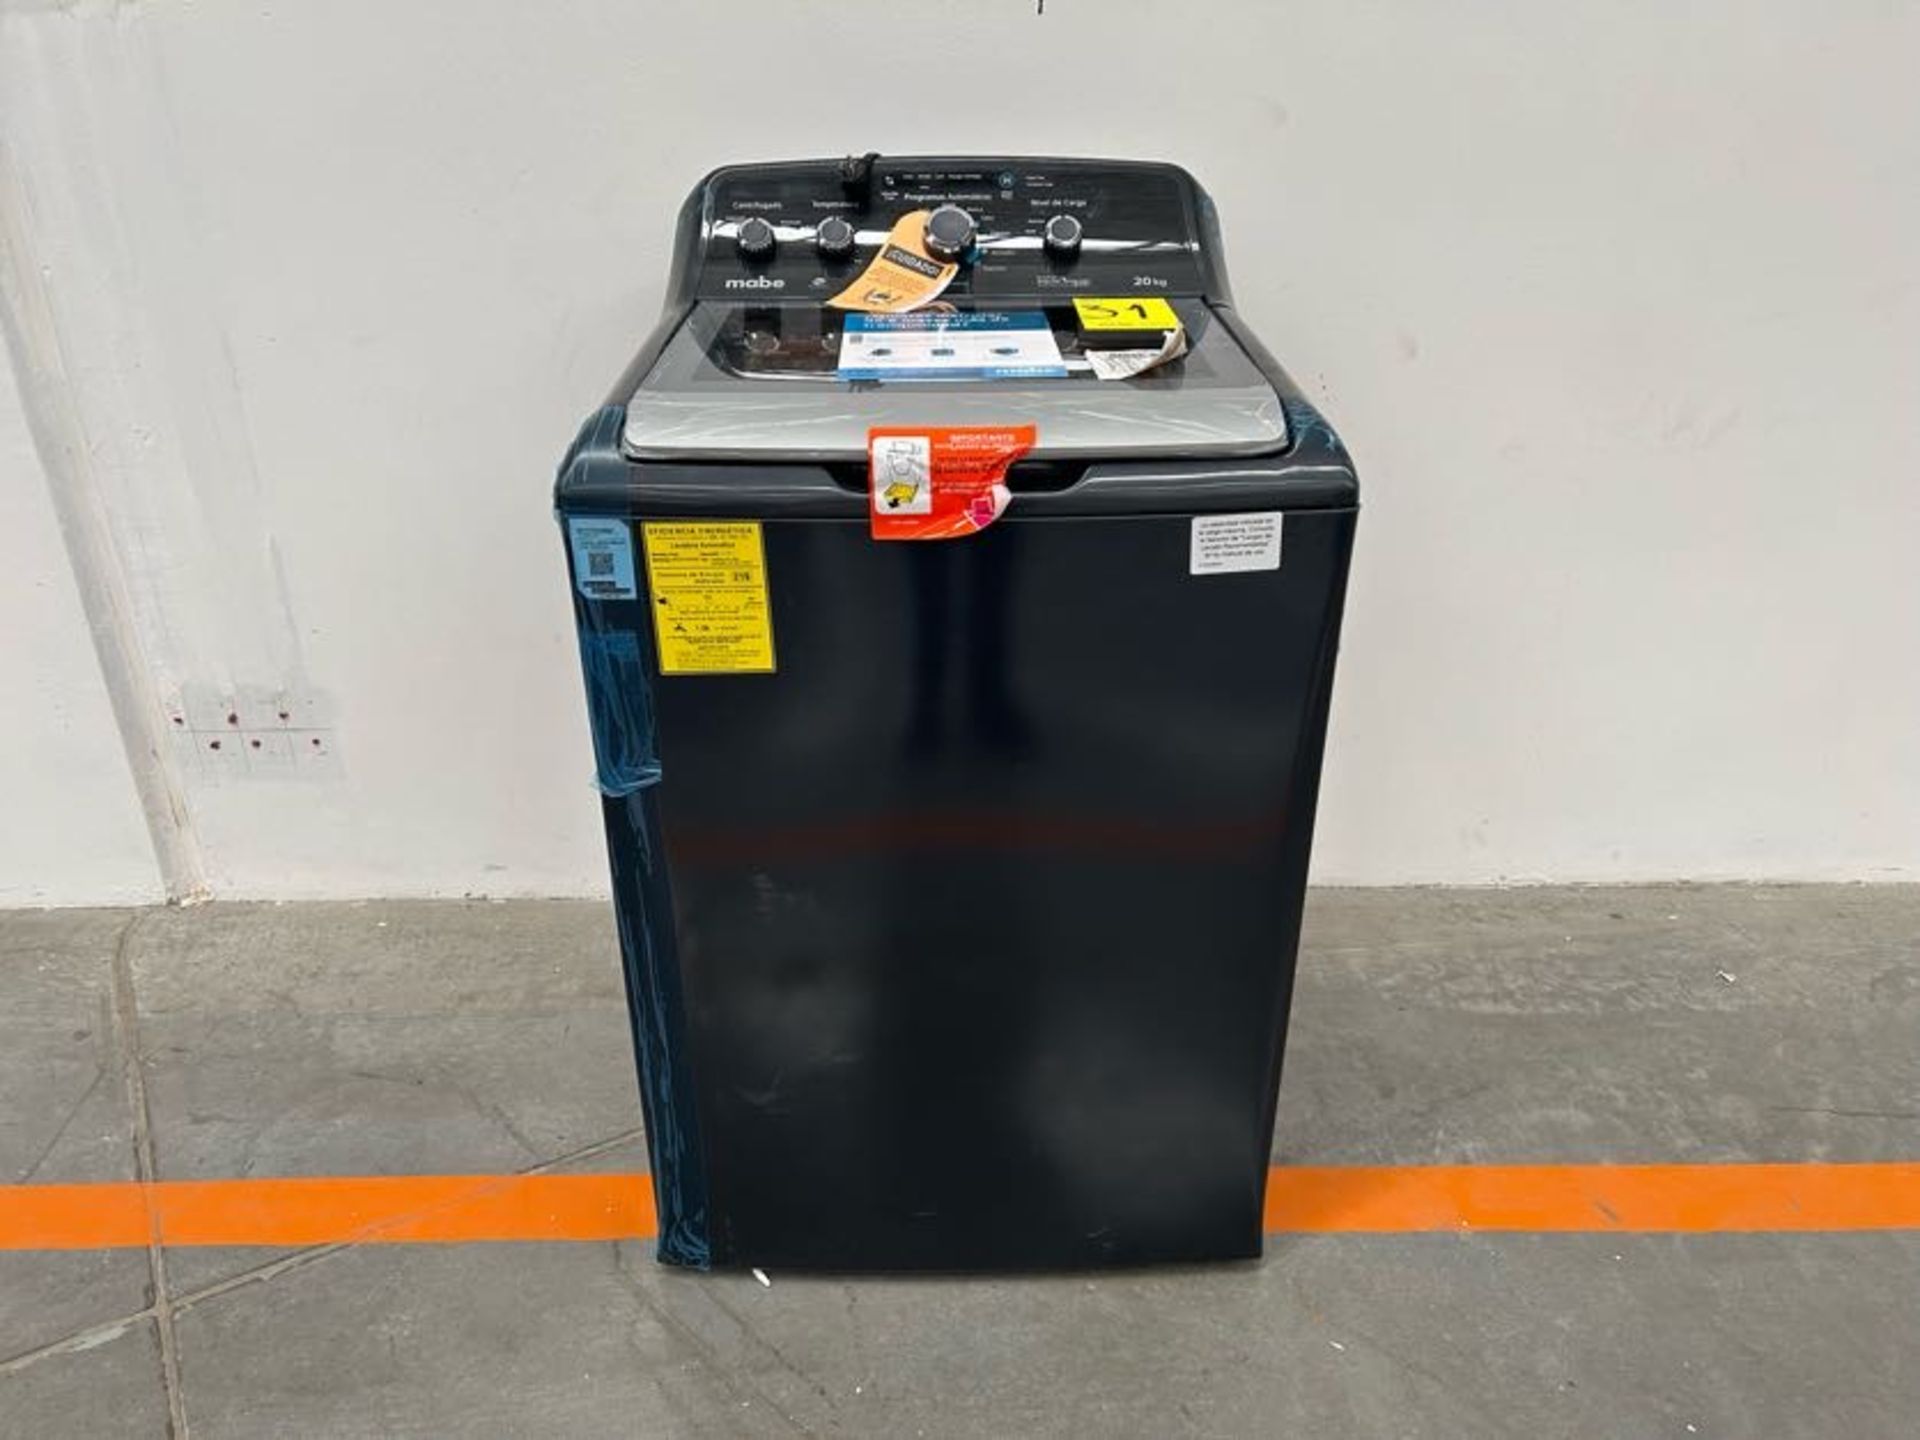 (NUEVO) Lavadora de 20 KG Marca MABE, Modelo LMX70214WDAB00, Serie S04194, Color NEGRO